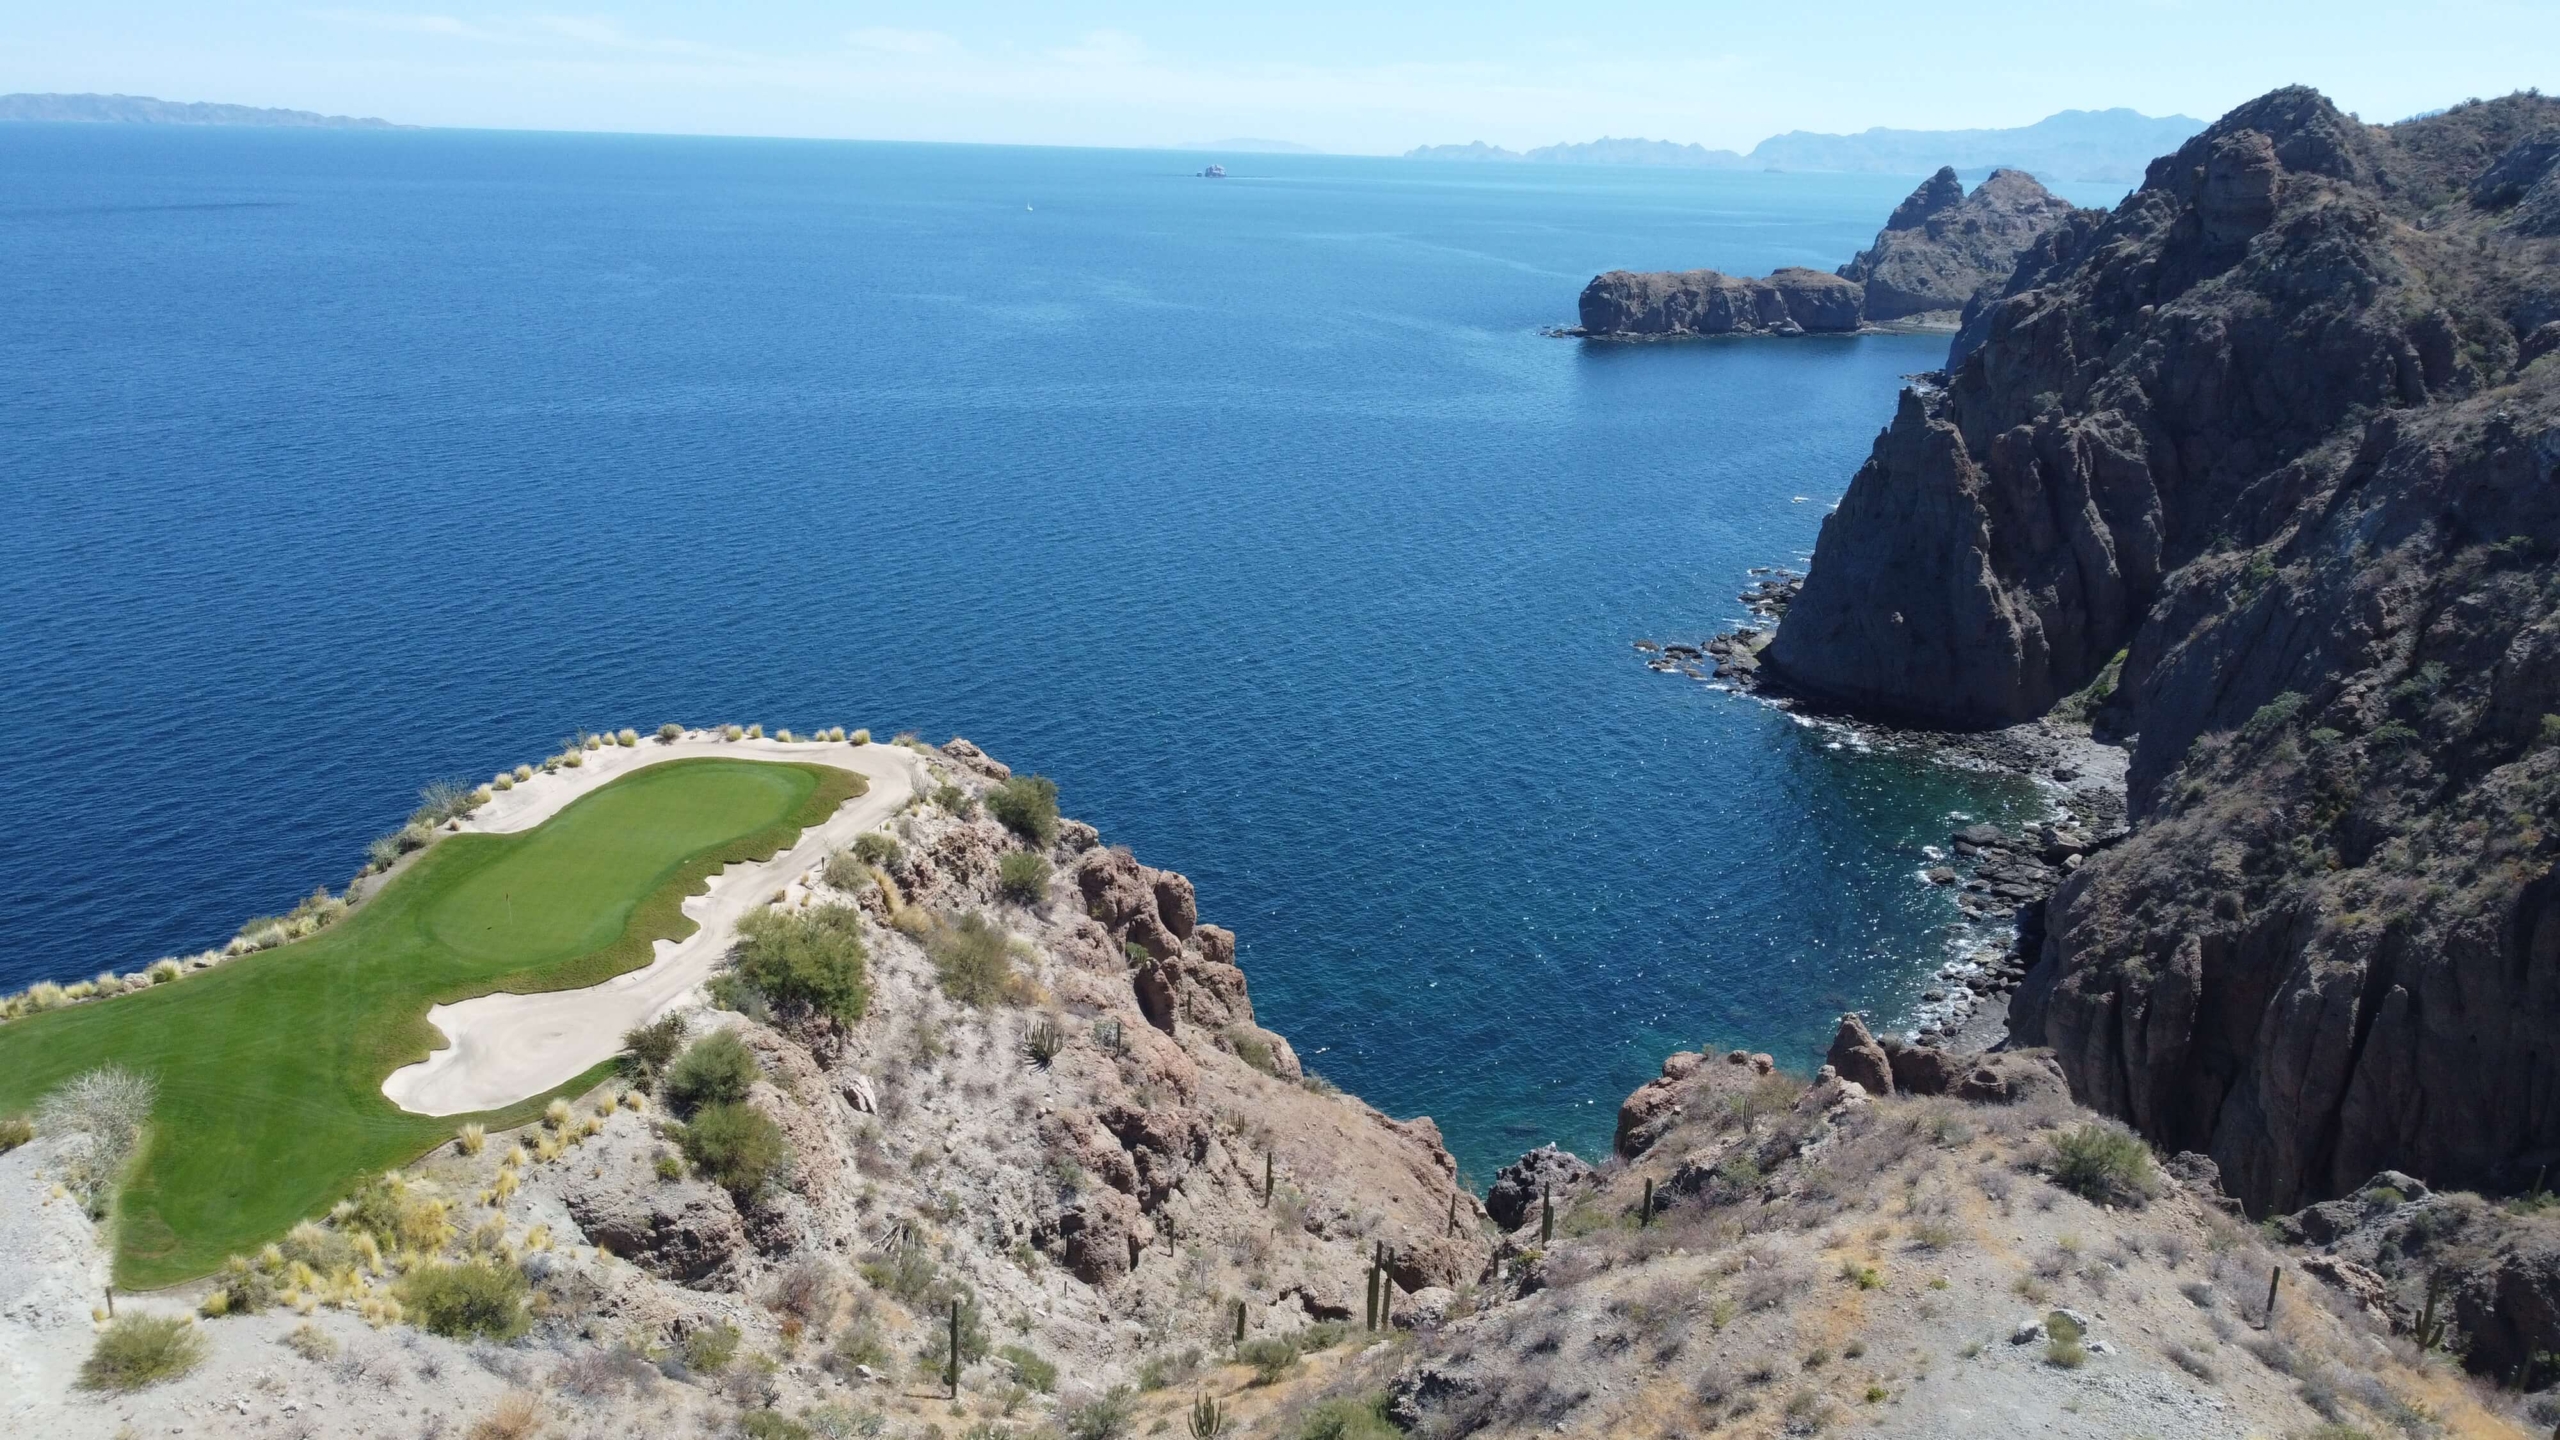 Golf Course View from Danzante Bay Baja California Sur